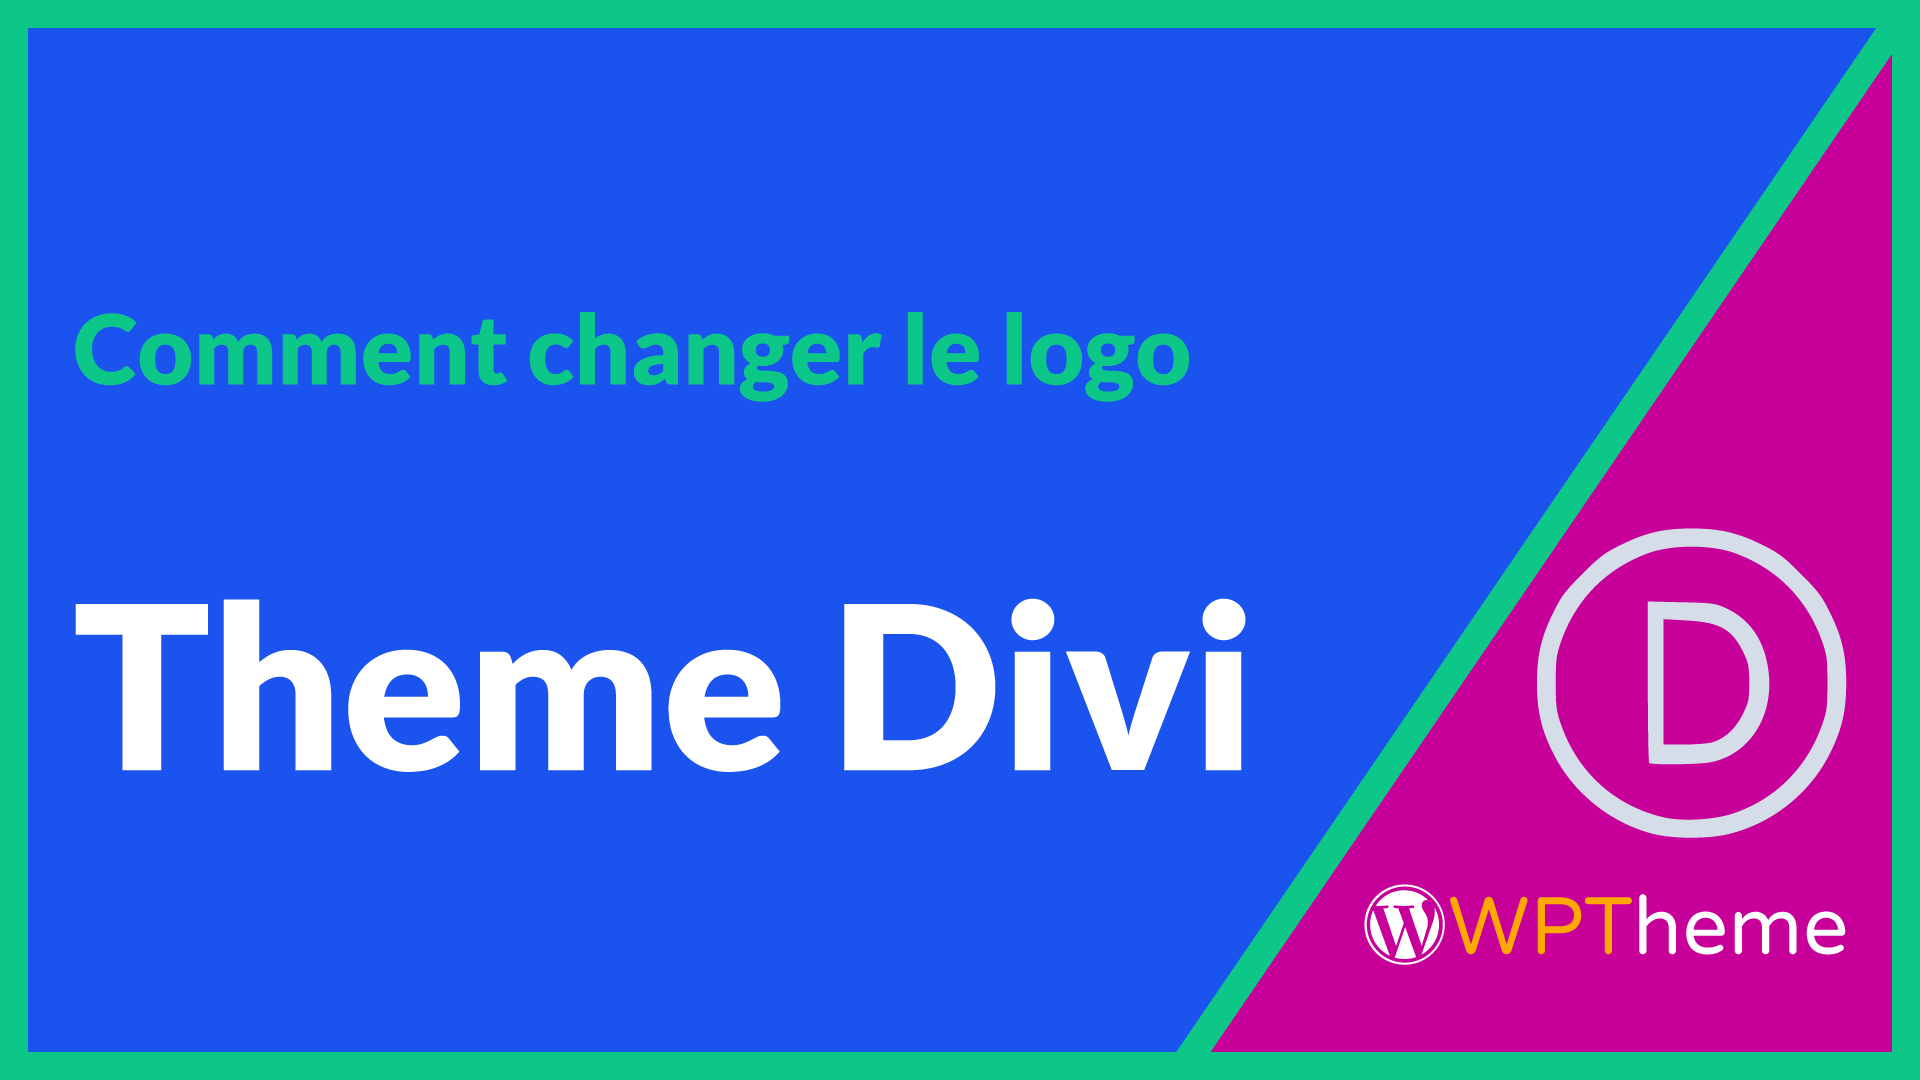 changer-logo-theme-divi